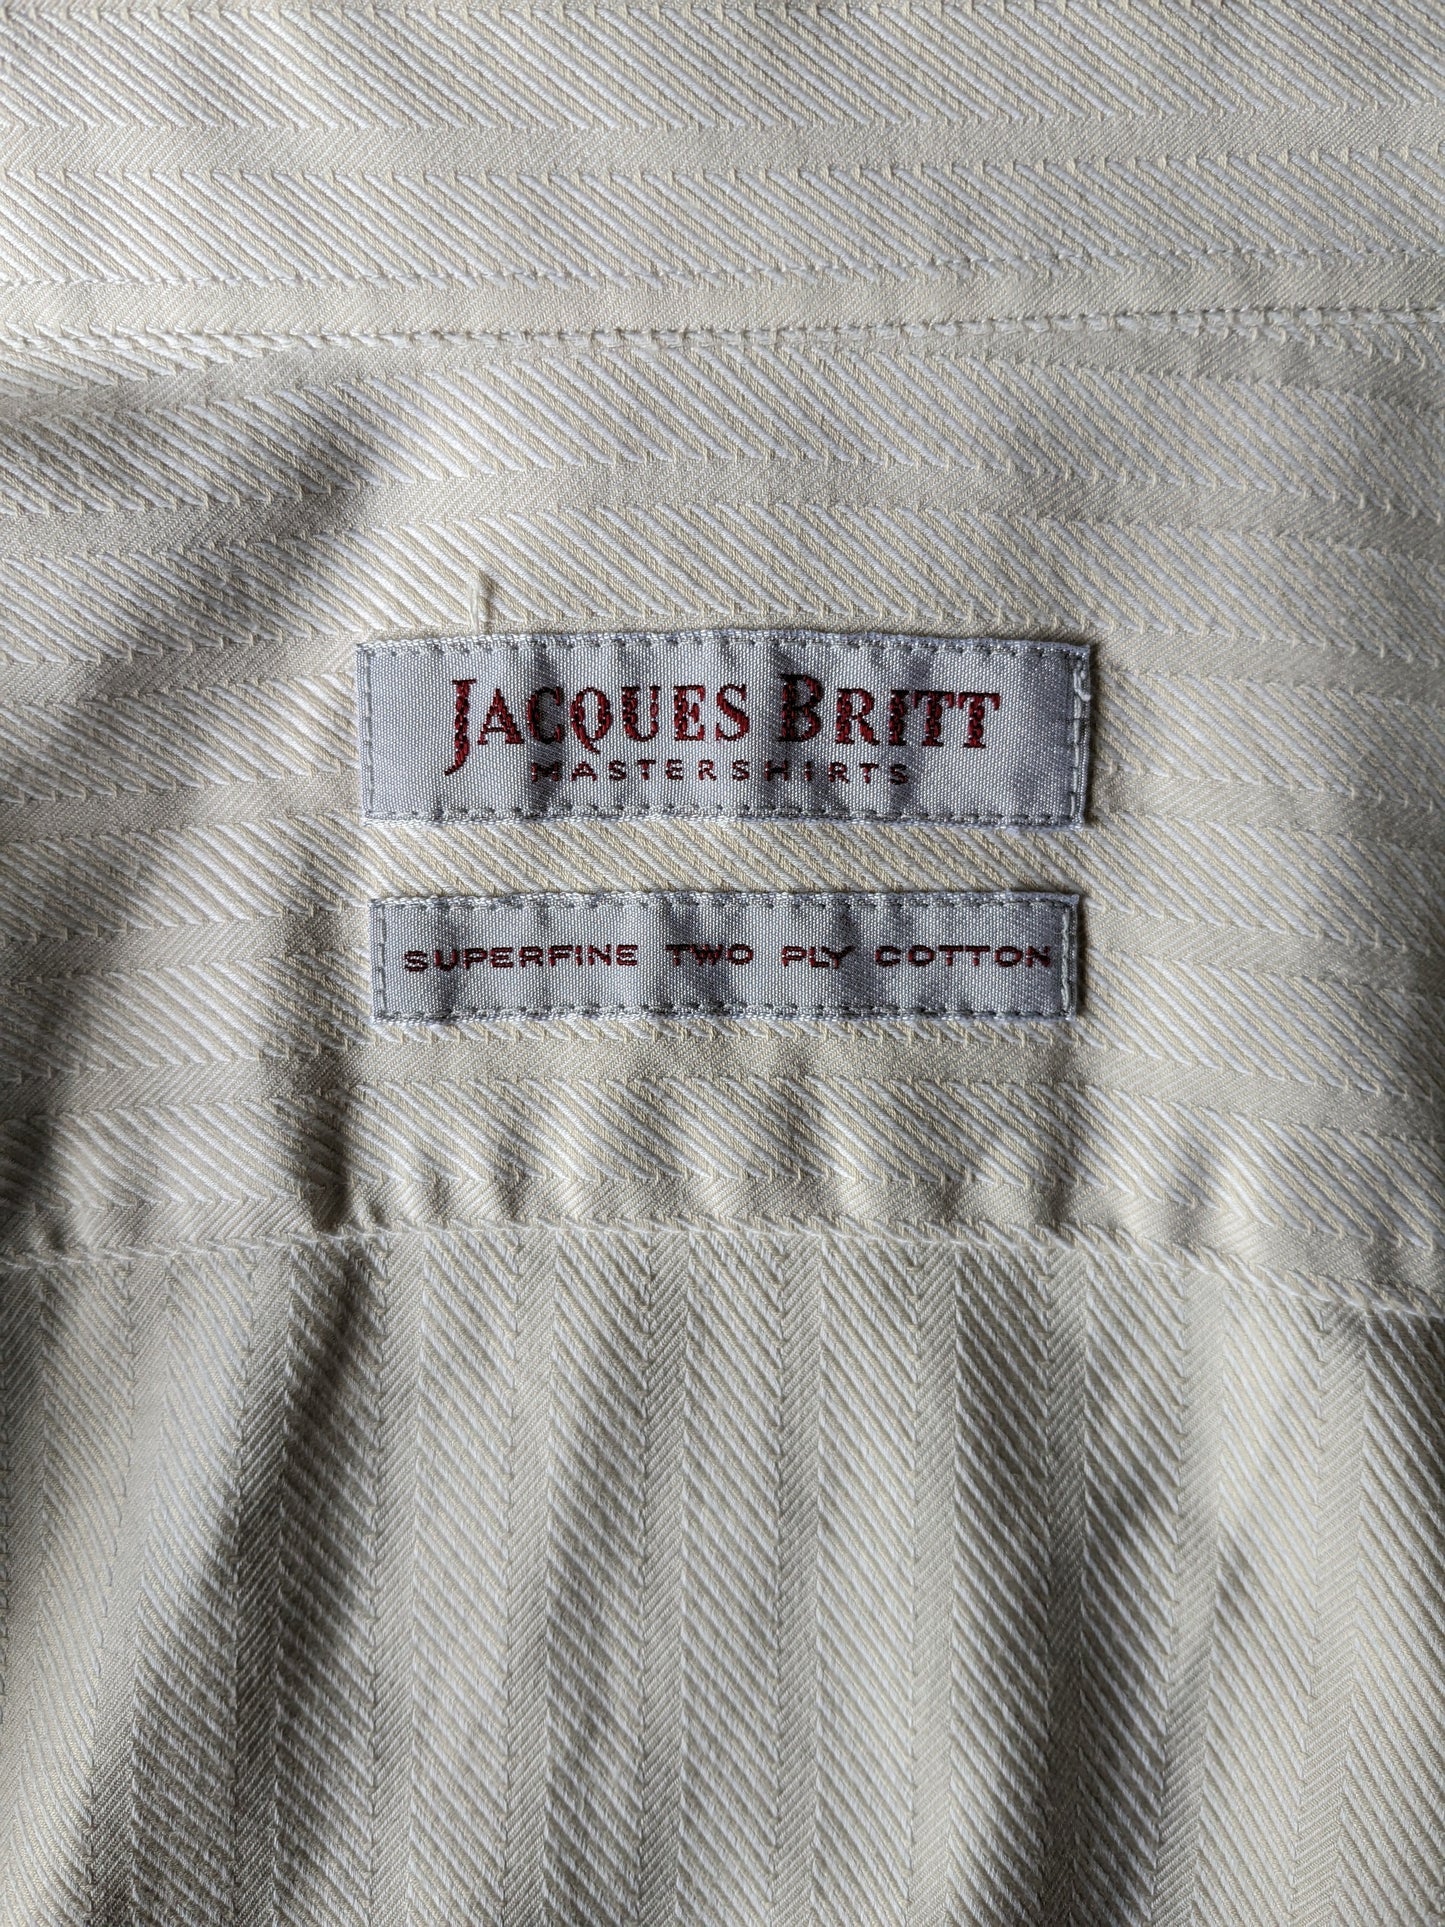 Vintage Jacques Britt Shirt. Beige gestreiftes Motiv. Größe xl.